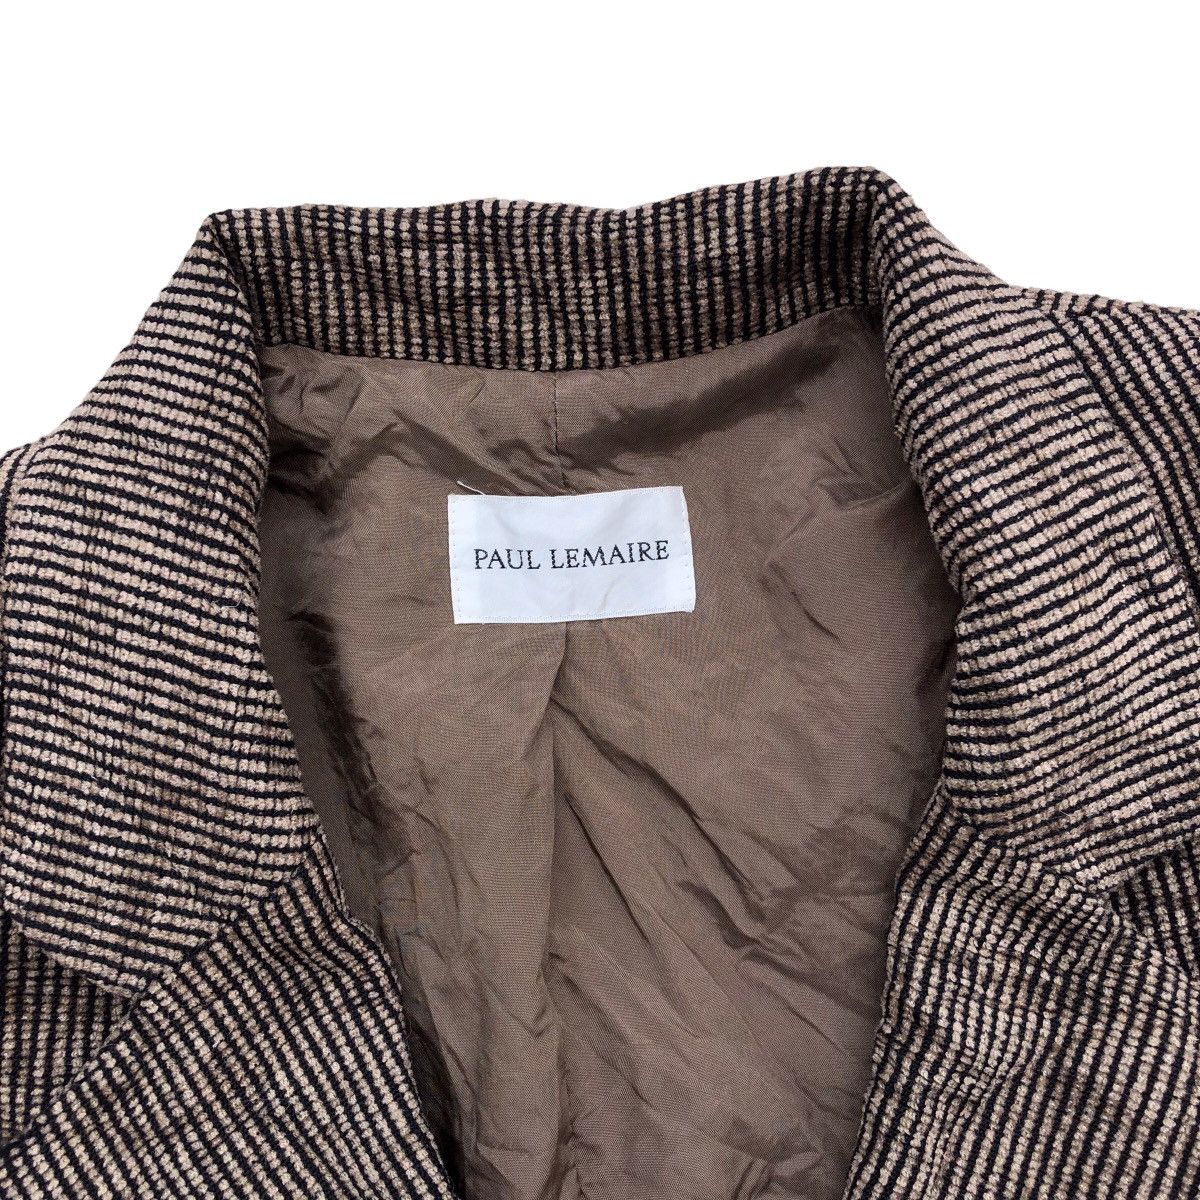 Archival Clothing PAUL LEMAIRE Corduroy Blazer Coat Size M / US 6-8 / IT 42-44 - 7 Thumbnail